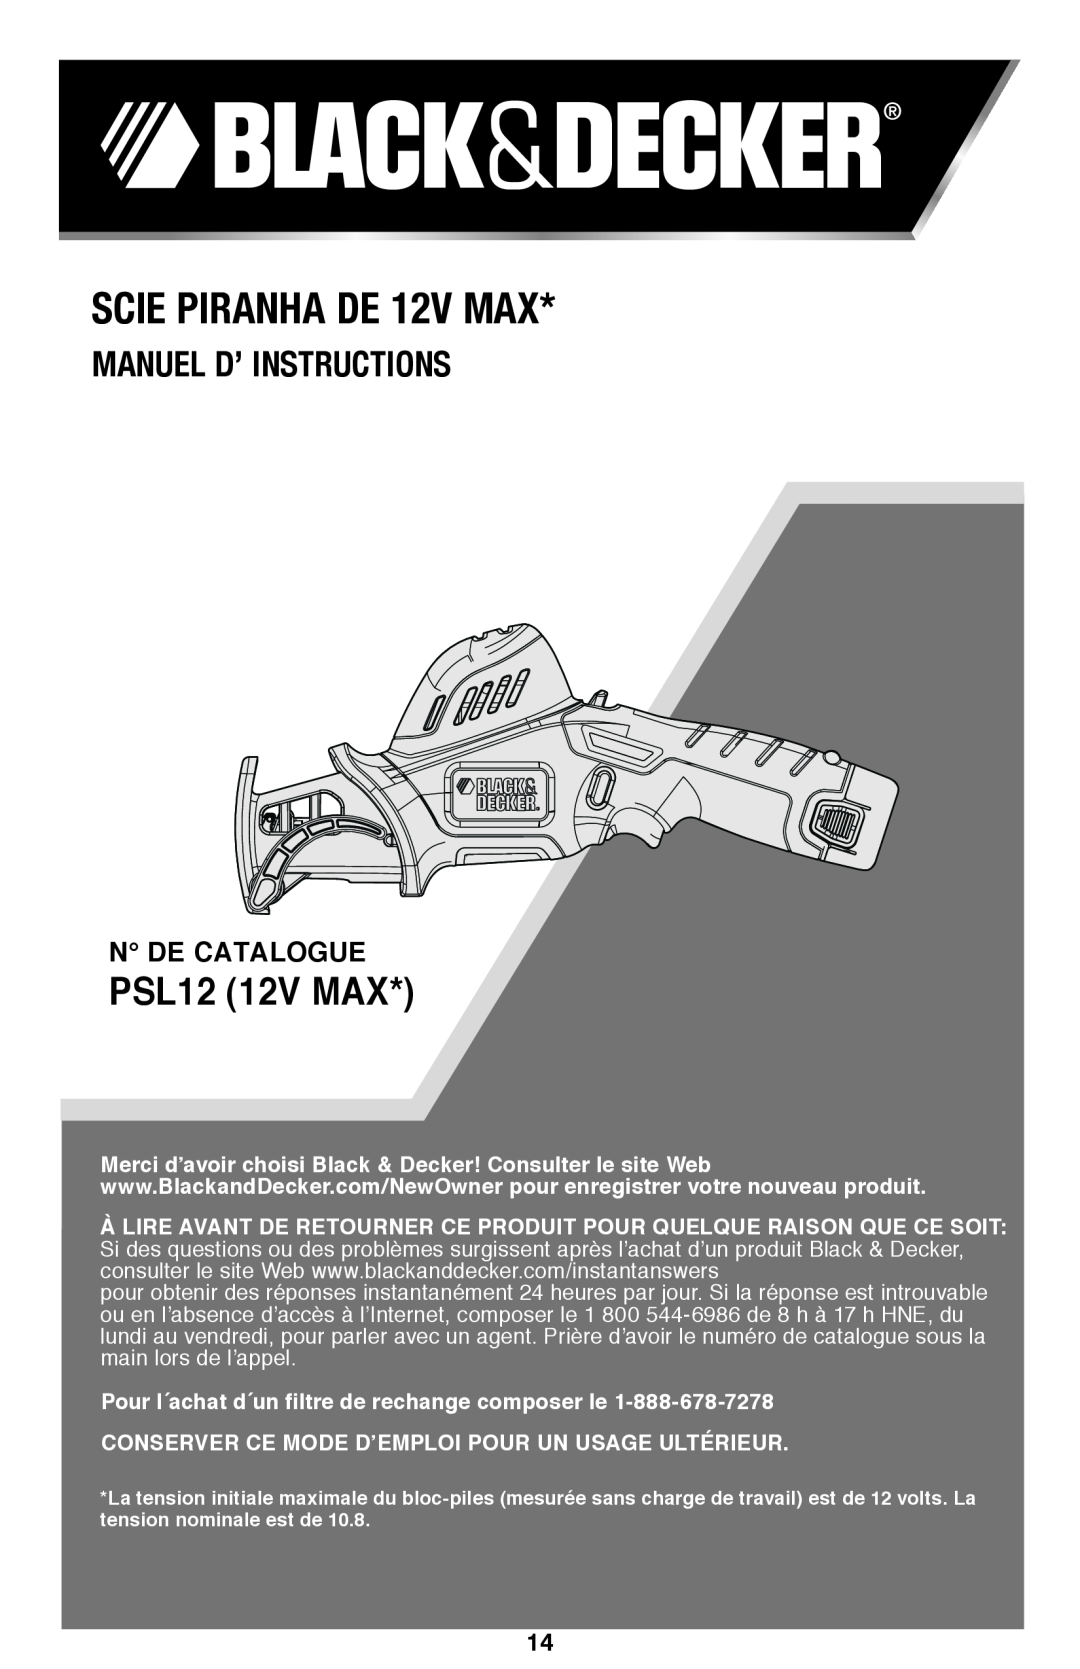 Black & Decker instruction manual Scie Piranha DE 12V MAX, Manuel D’ Instructions, PSL12 12V MAX 